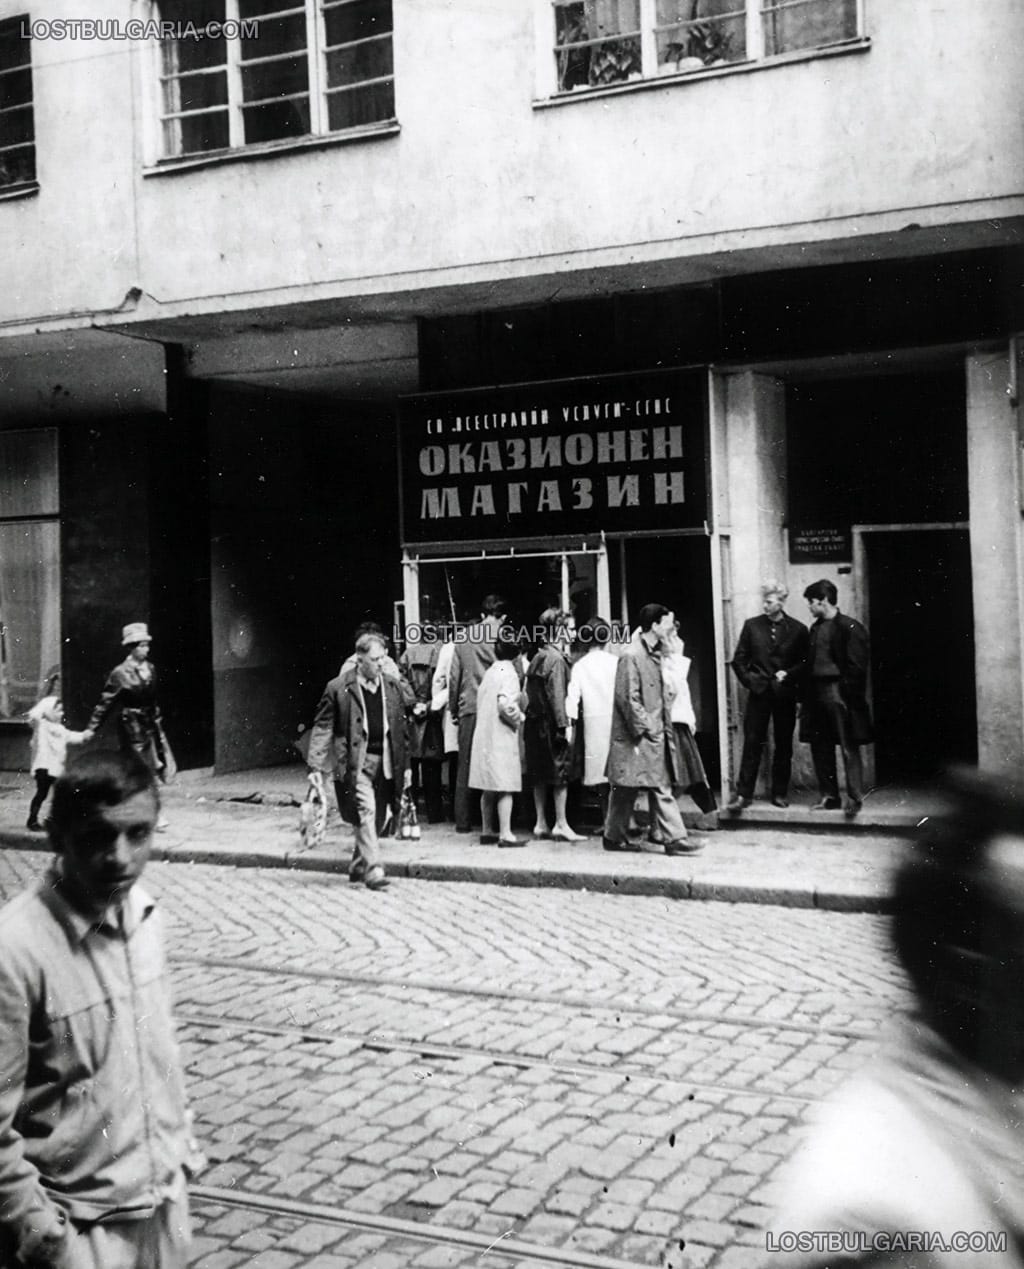 София, оказионен магазин на площад "Славейков", началото на 60-те години на ХХ век